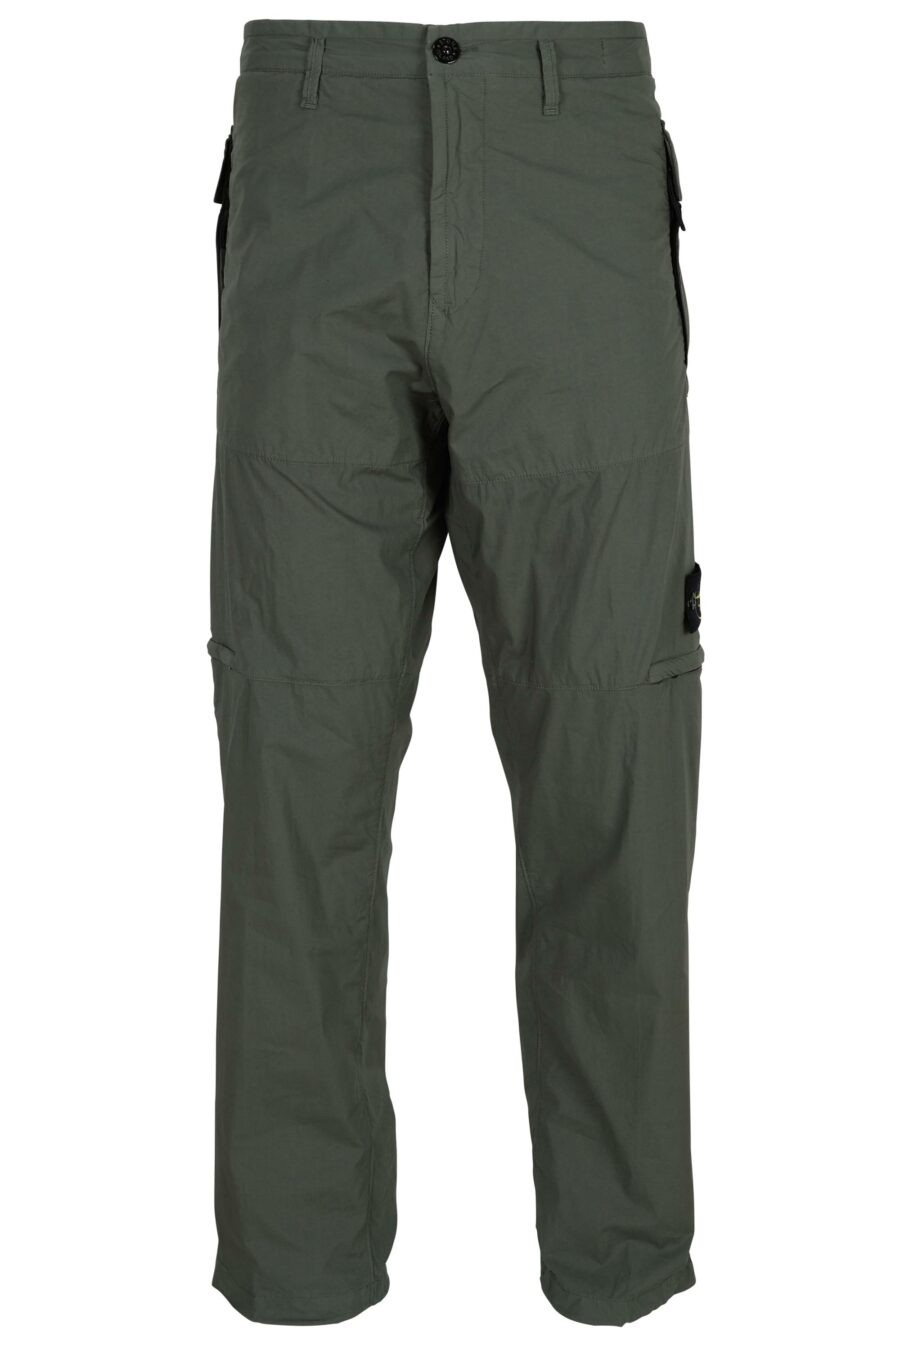 Pantalon "regular" vert militaire avec logo patch boussole - 8052572955013